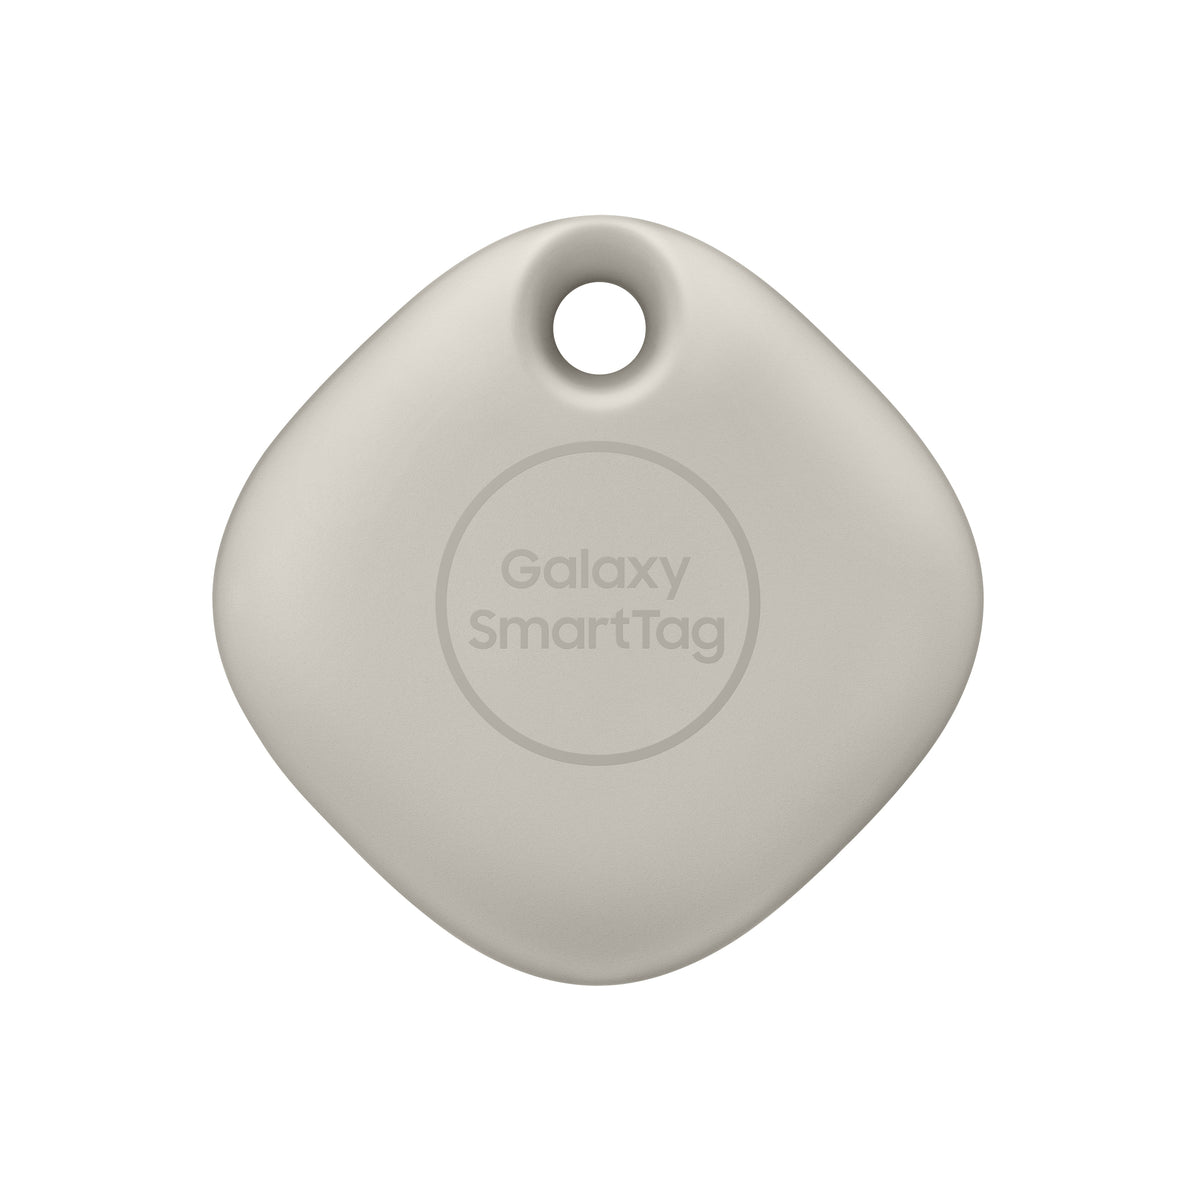 Chytrý přívěšek Samsung Galaxy SmartTag, stříbrná OBAL POŠKOZEN